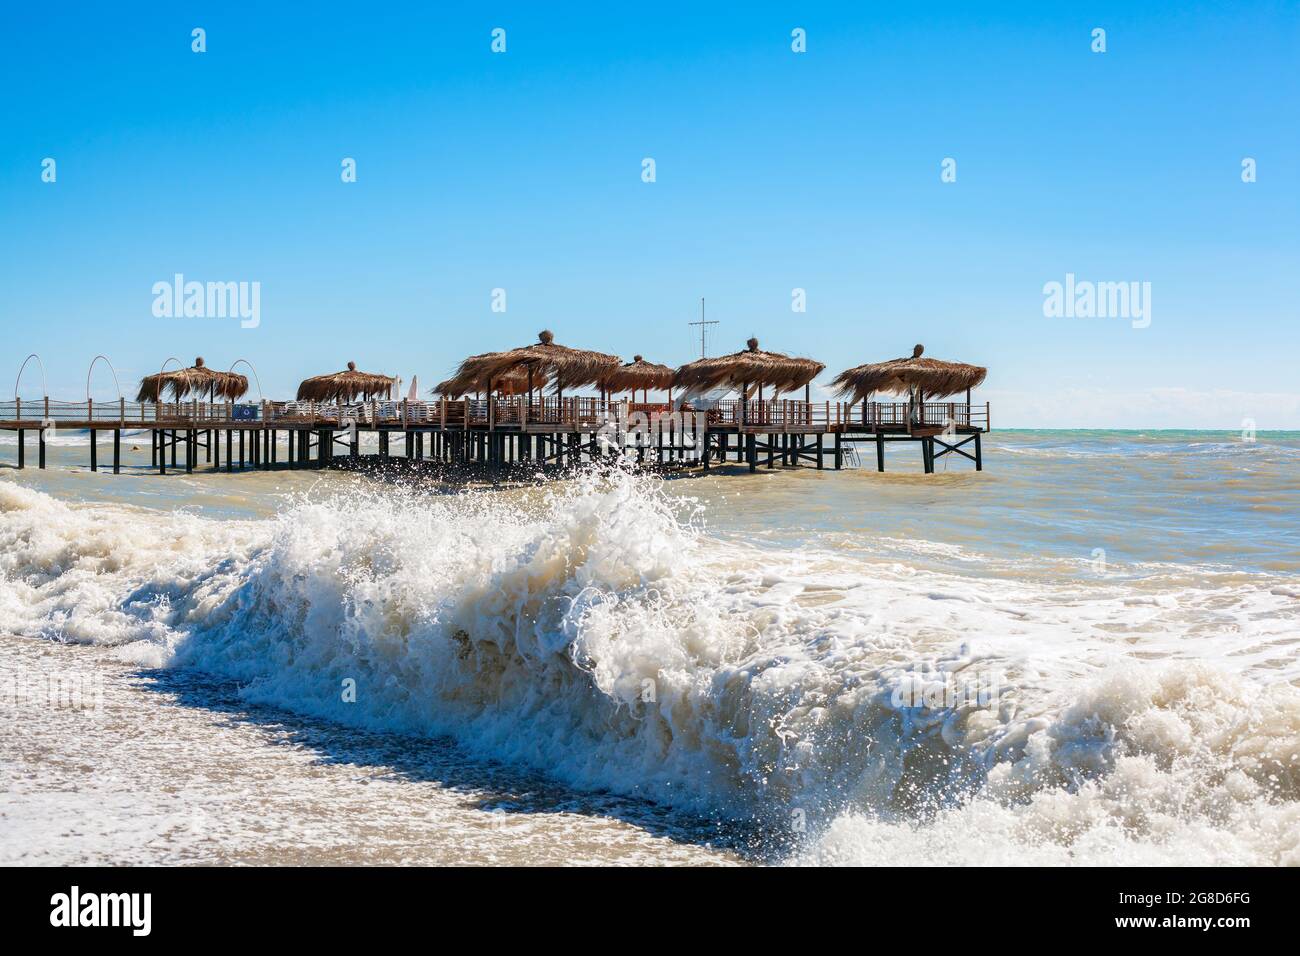 Capanne di palme da spiaggia su banchina di legno in un mare ondulato. Concetto di fine stagione estiva. Foto Stock